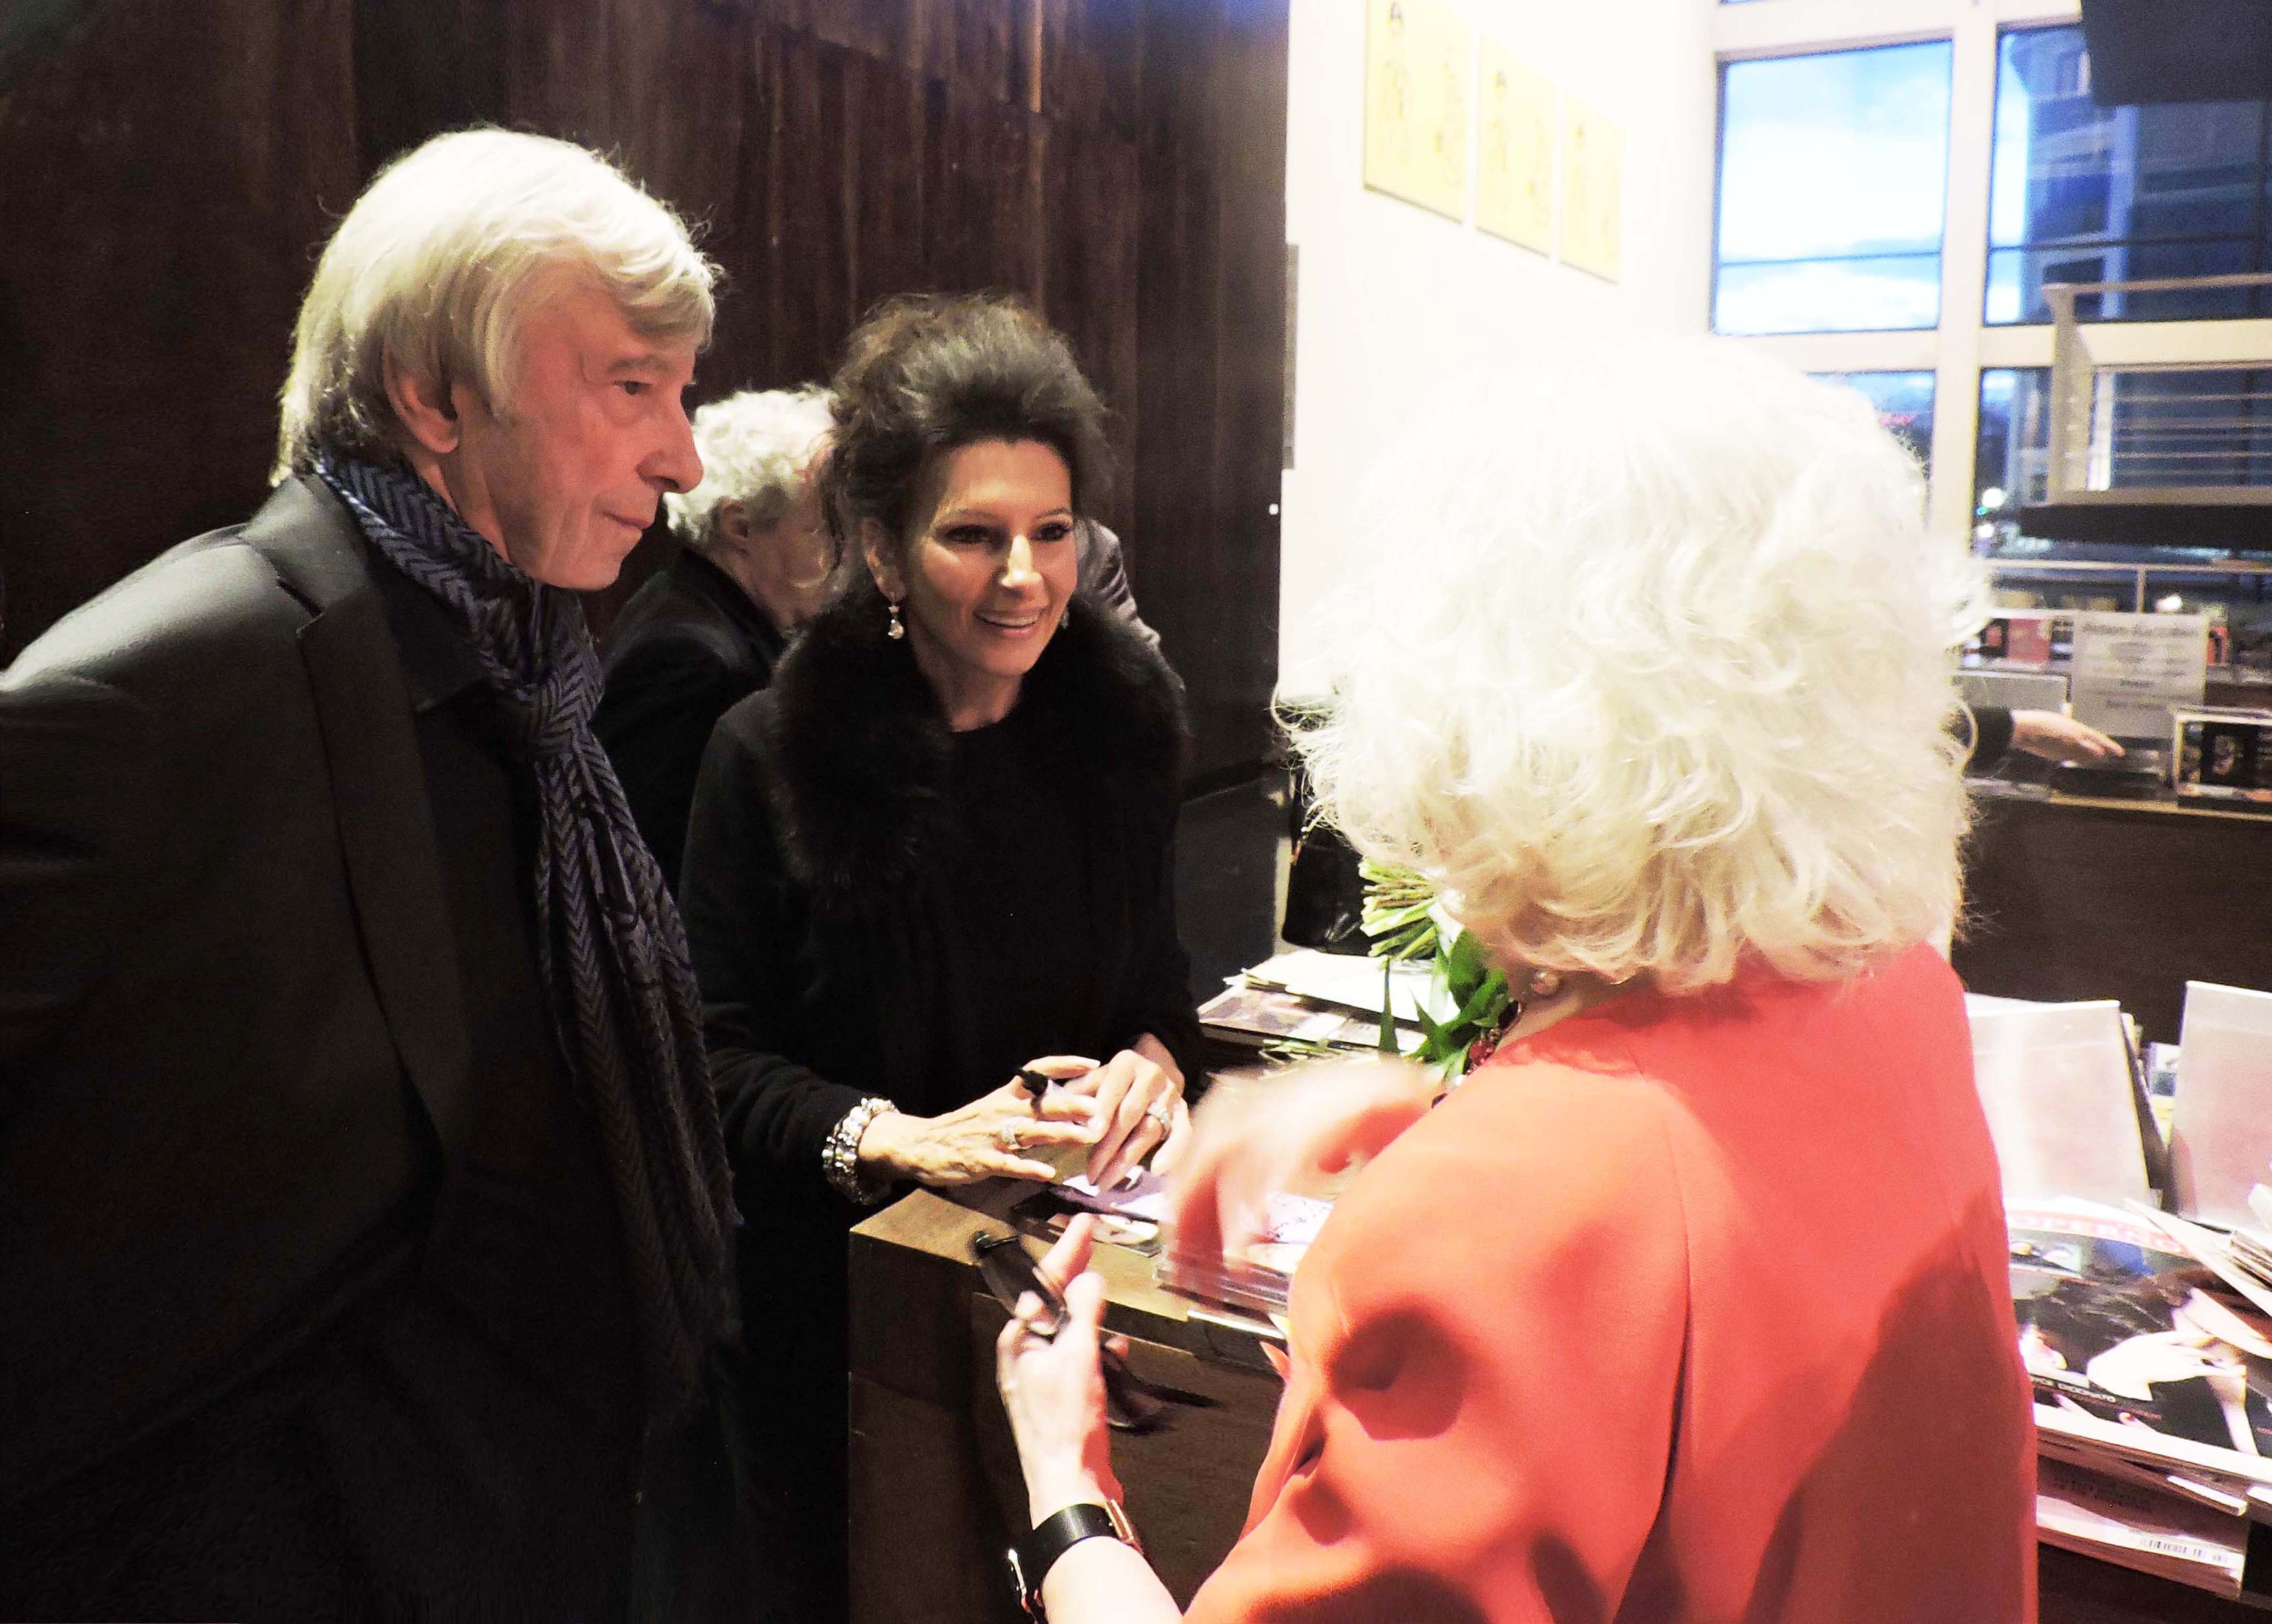 Lucia Aliberti with friends Bernhard and Carola Ostermann⚘Belcanto Symposion⚘Deutsche Oper Berlin⚘Berlin⚘Autograph Session⚘Escada Fashion⚘:http://www.luciaaliberti.it #luciaaliberti #bernhardostermann #belcantosymposion #deutscheoperberlin #berlin #autographsession #fans #escadafashion